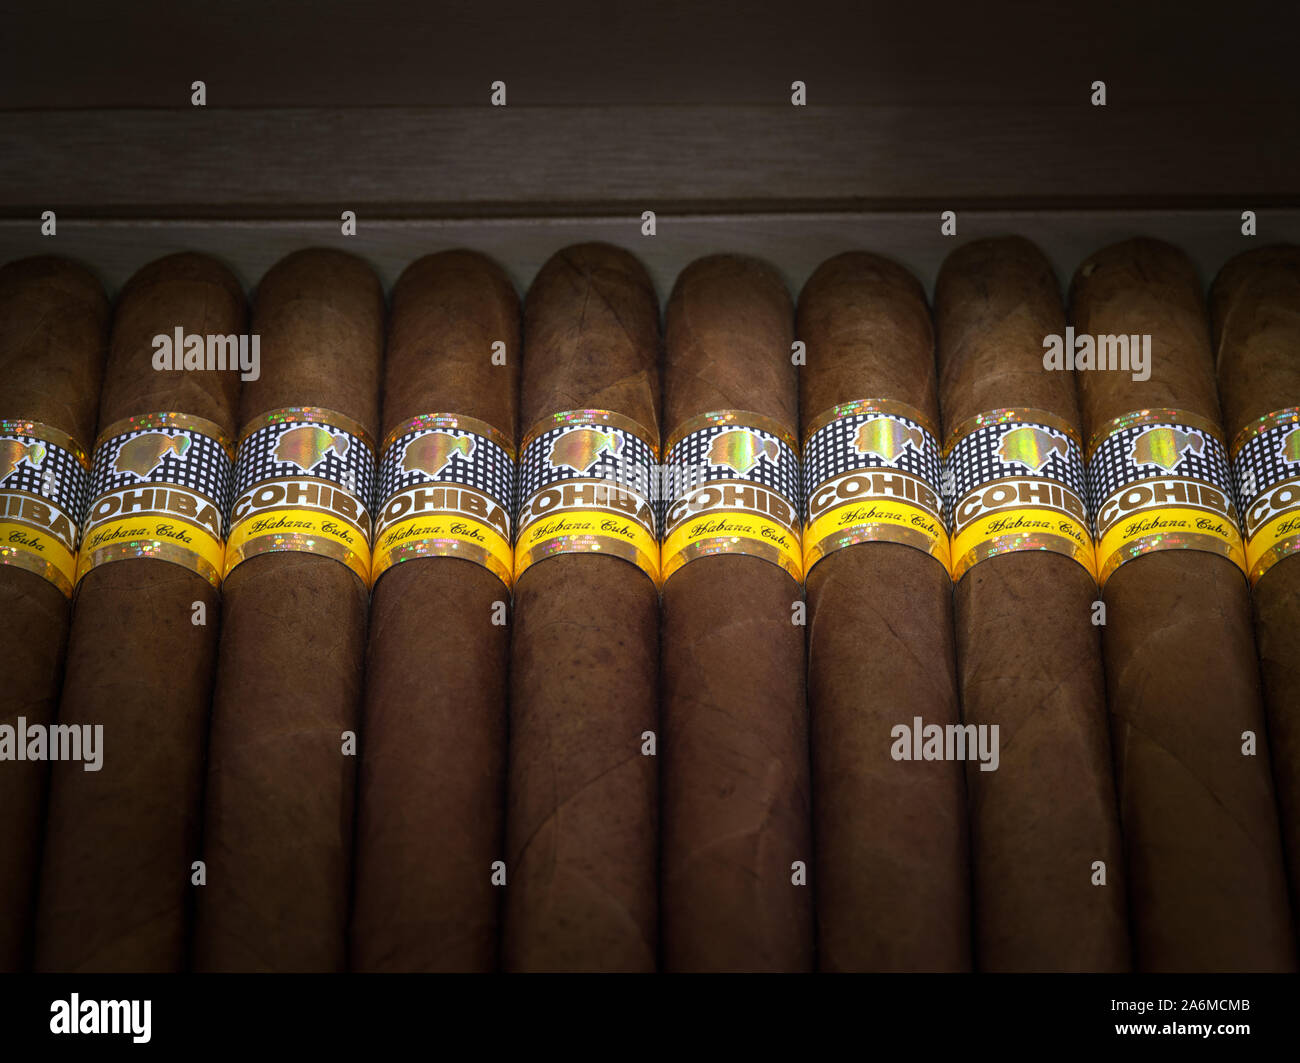 Kubanische Zigarren Stockfoto